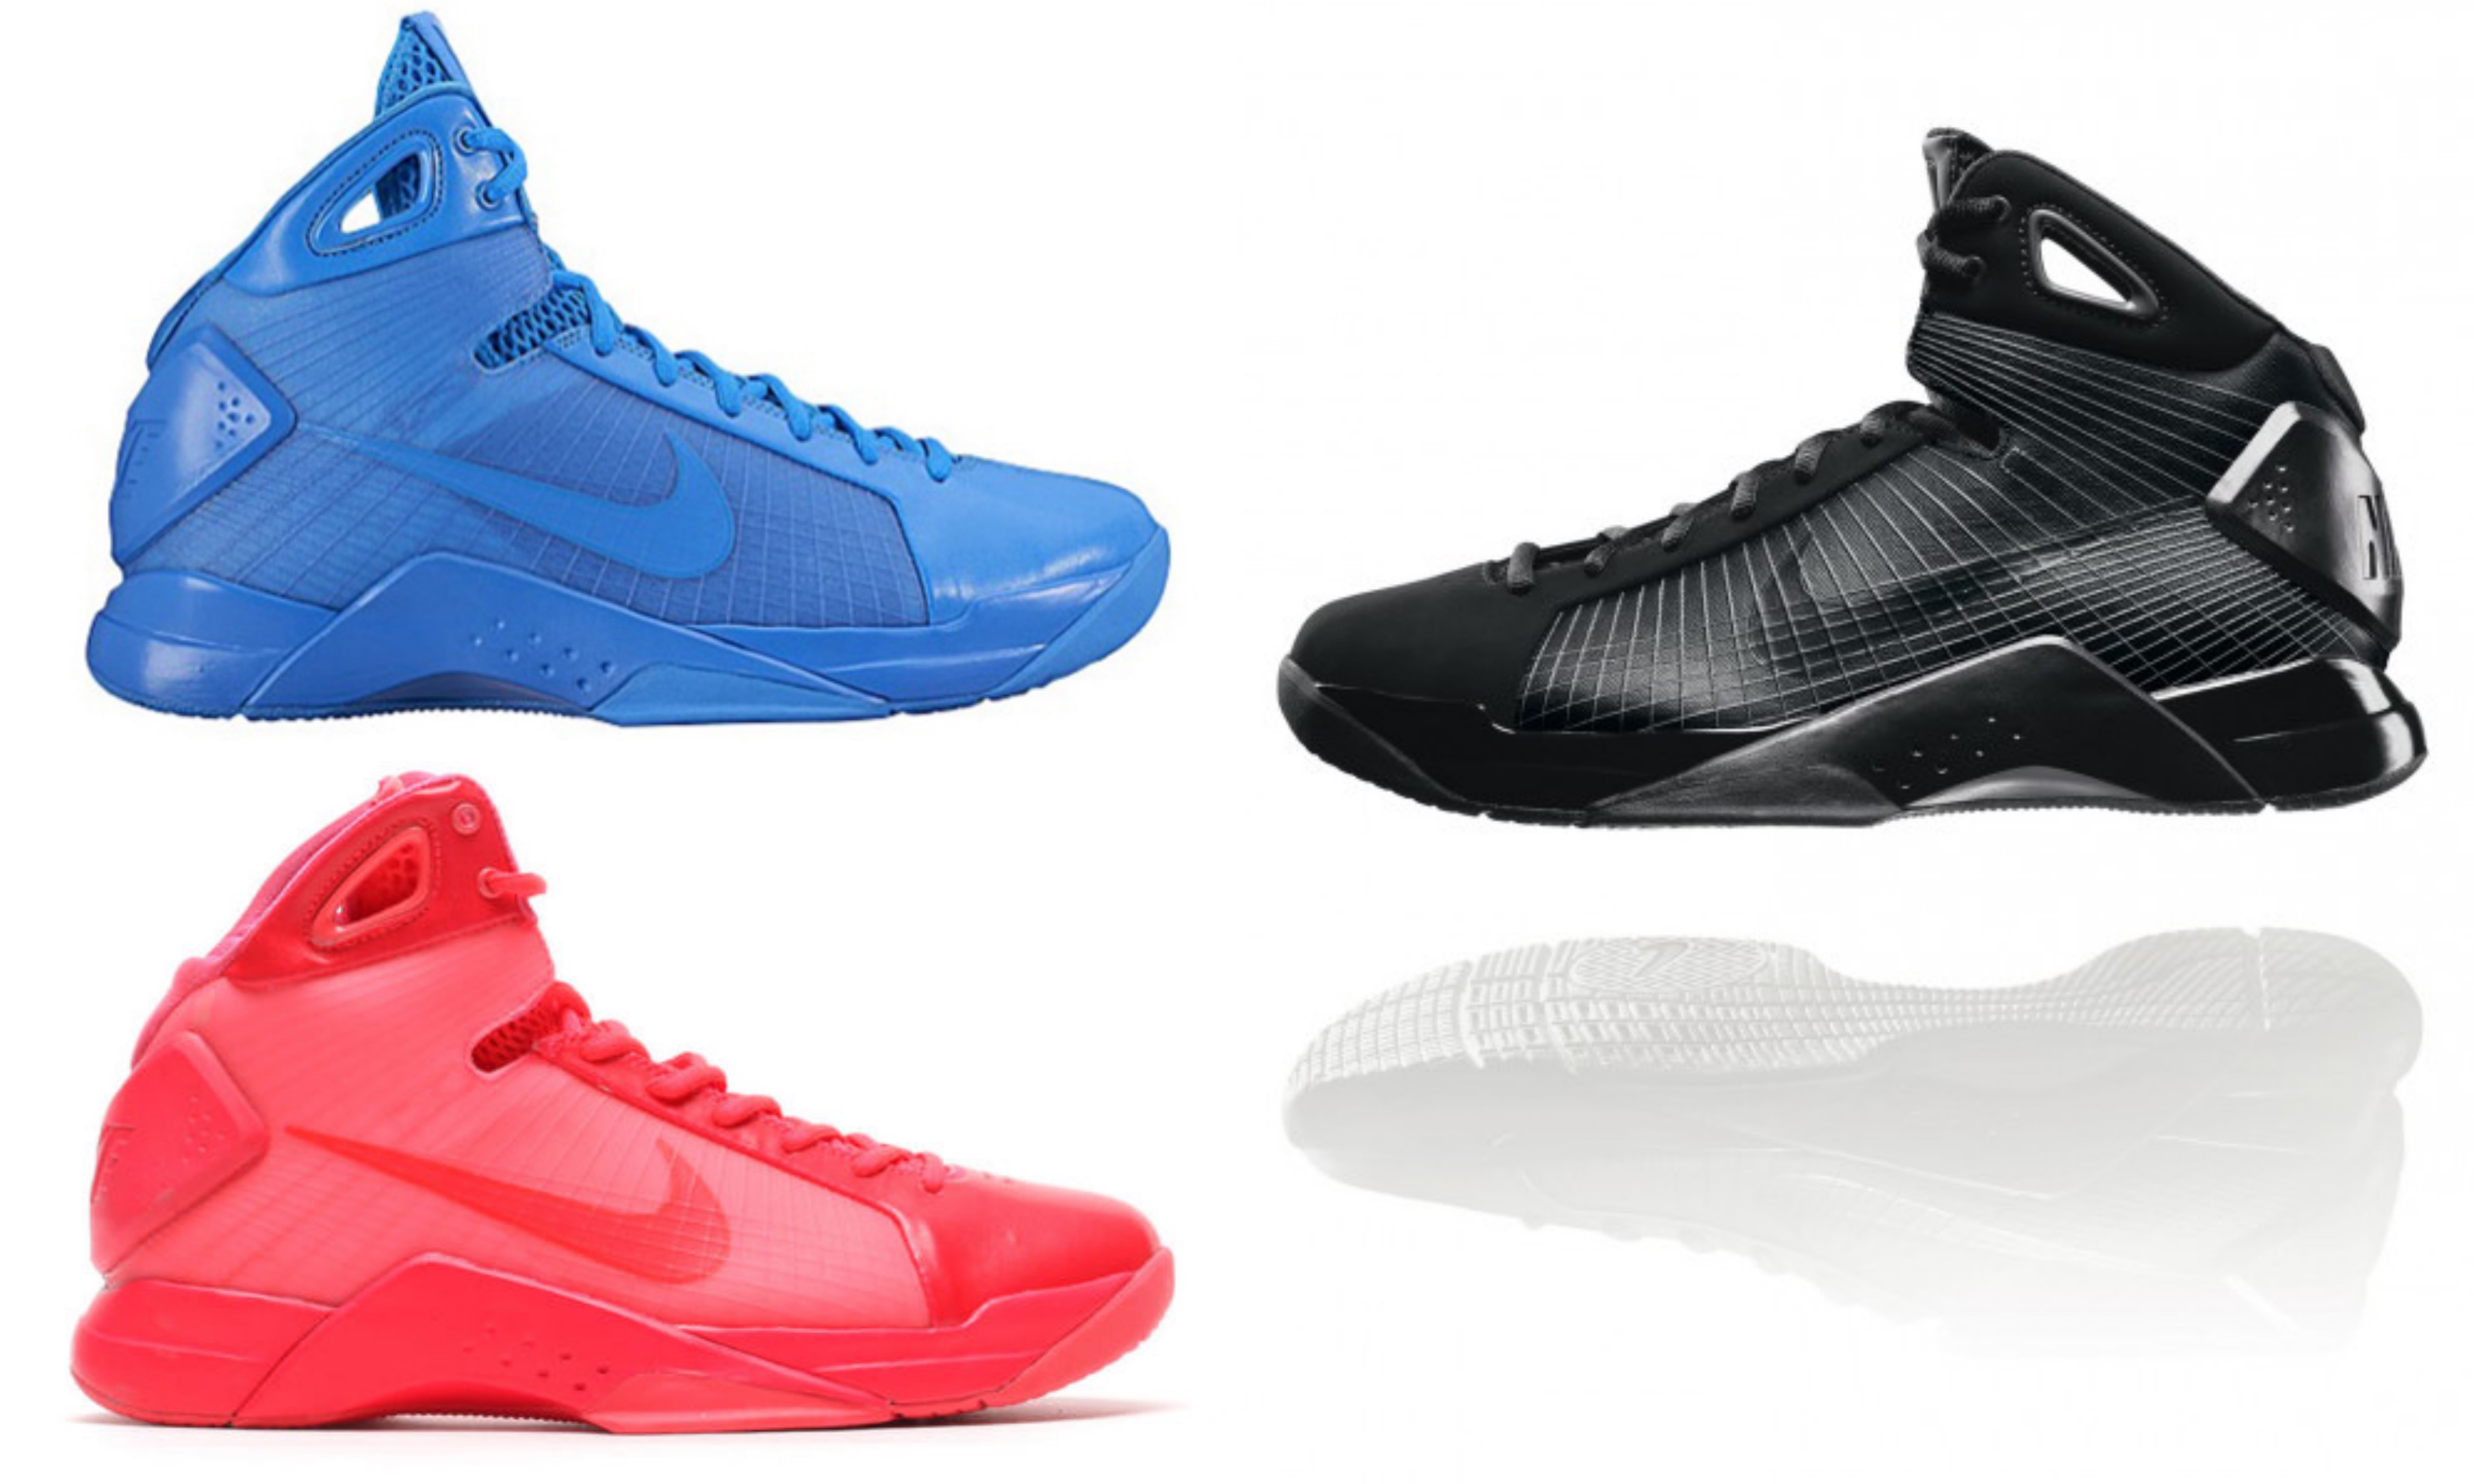 Basketball / Kicks On Court / Nike / Retro Lifestyle ...